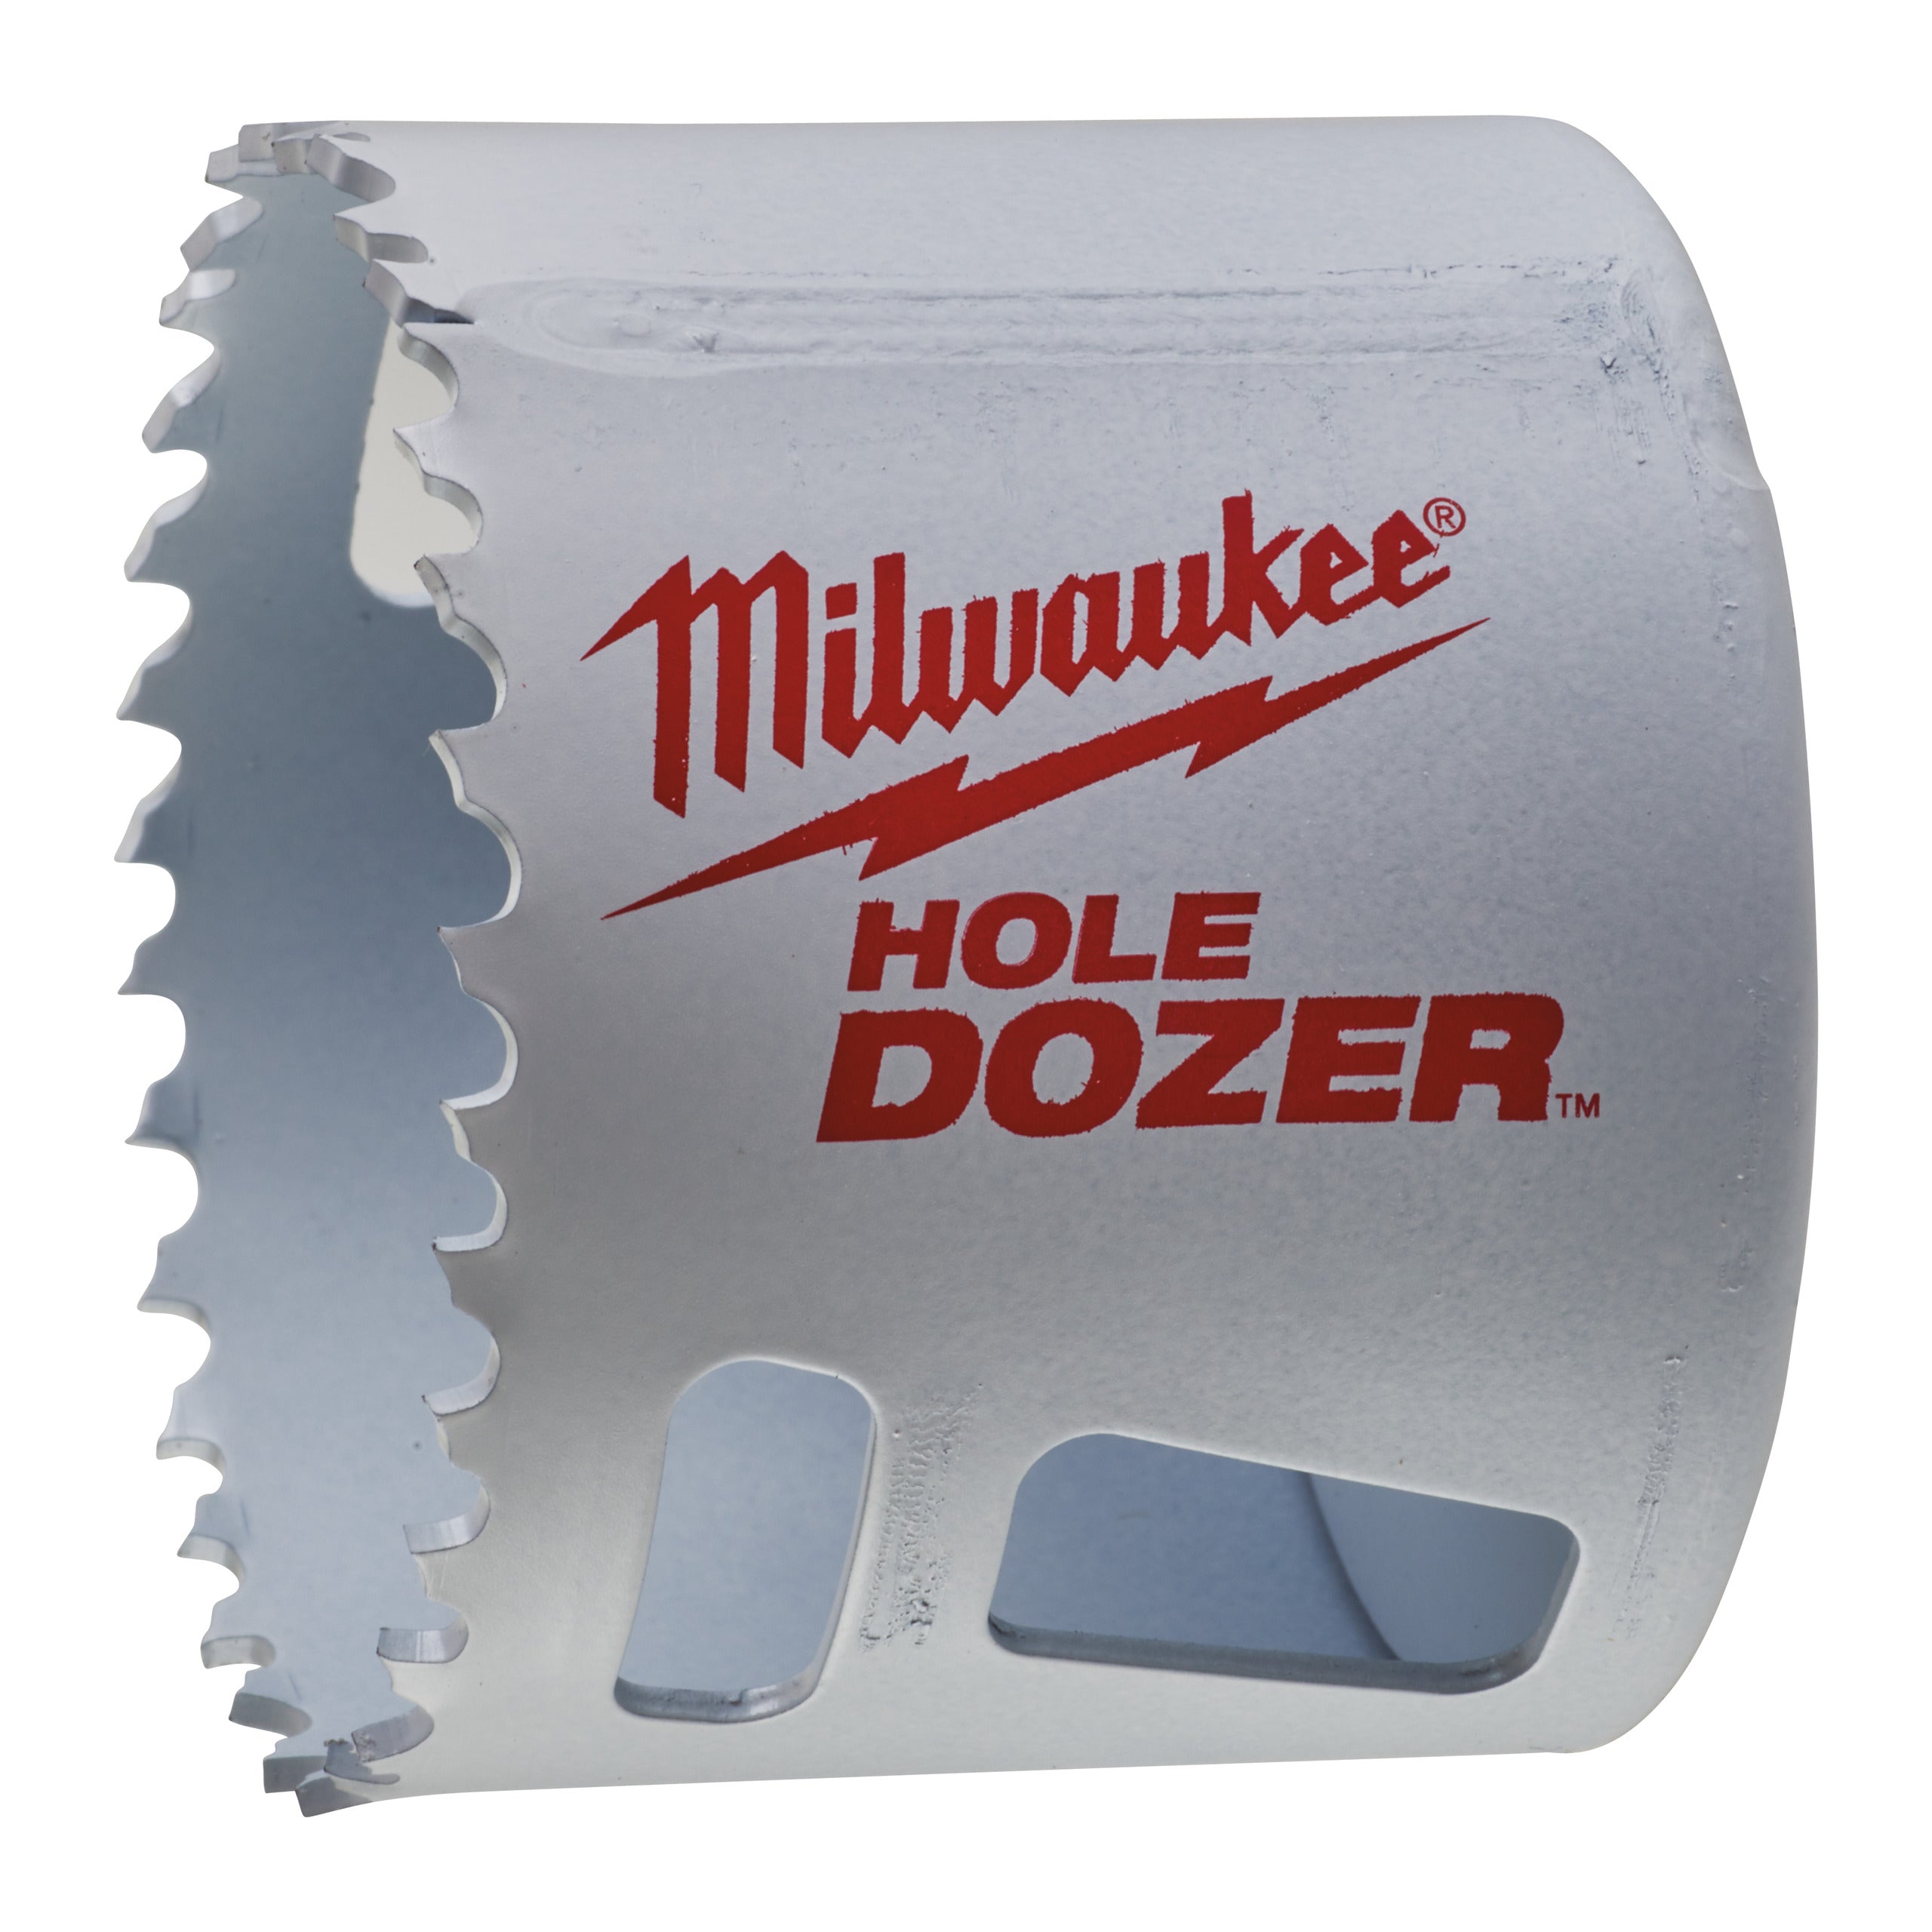 Carotă Milwaukee HOLE DOZER™ bi-metal Ø60 mm 49560142